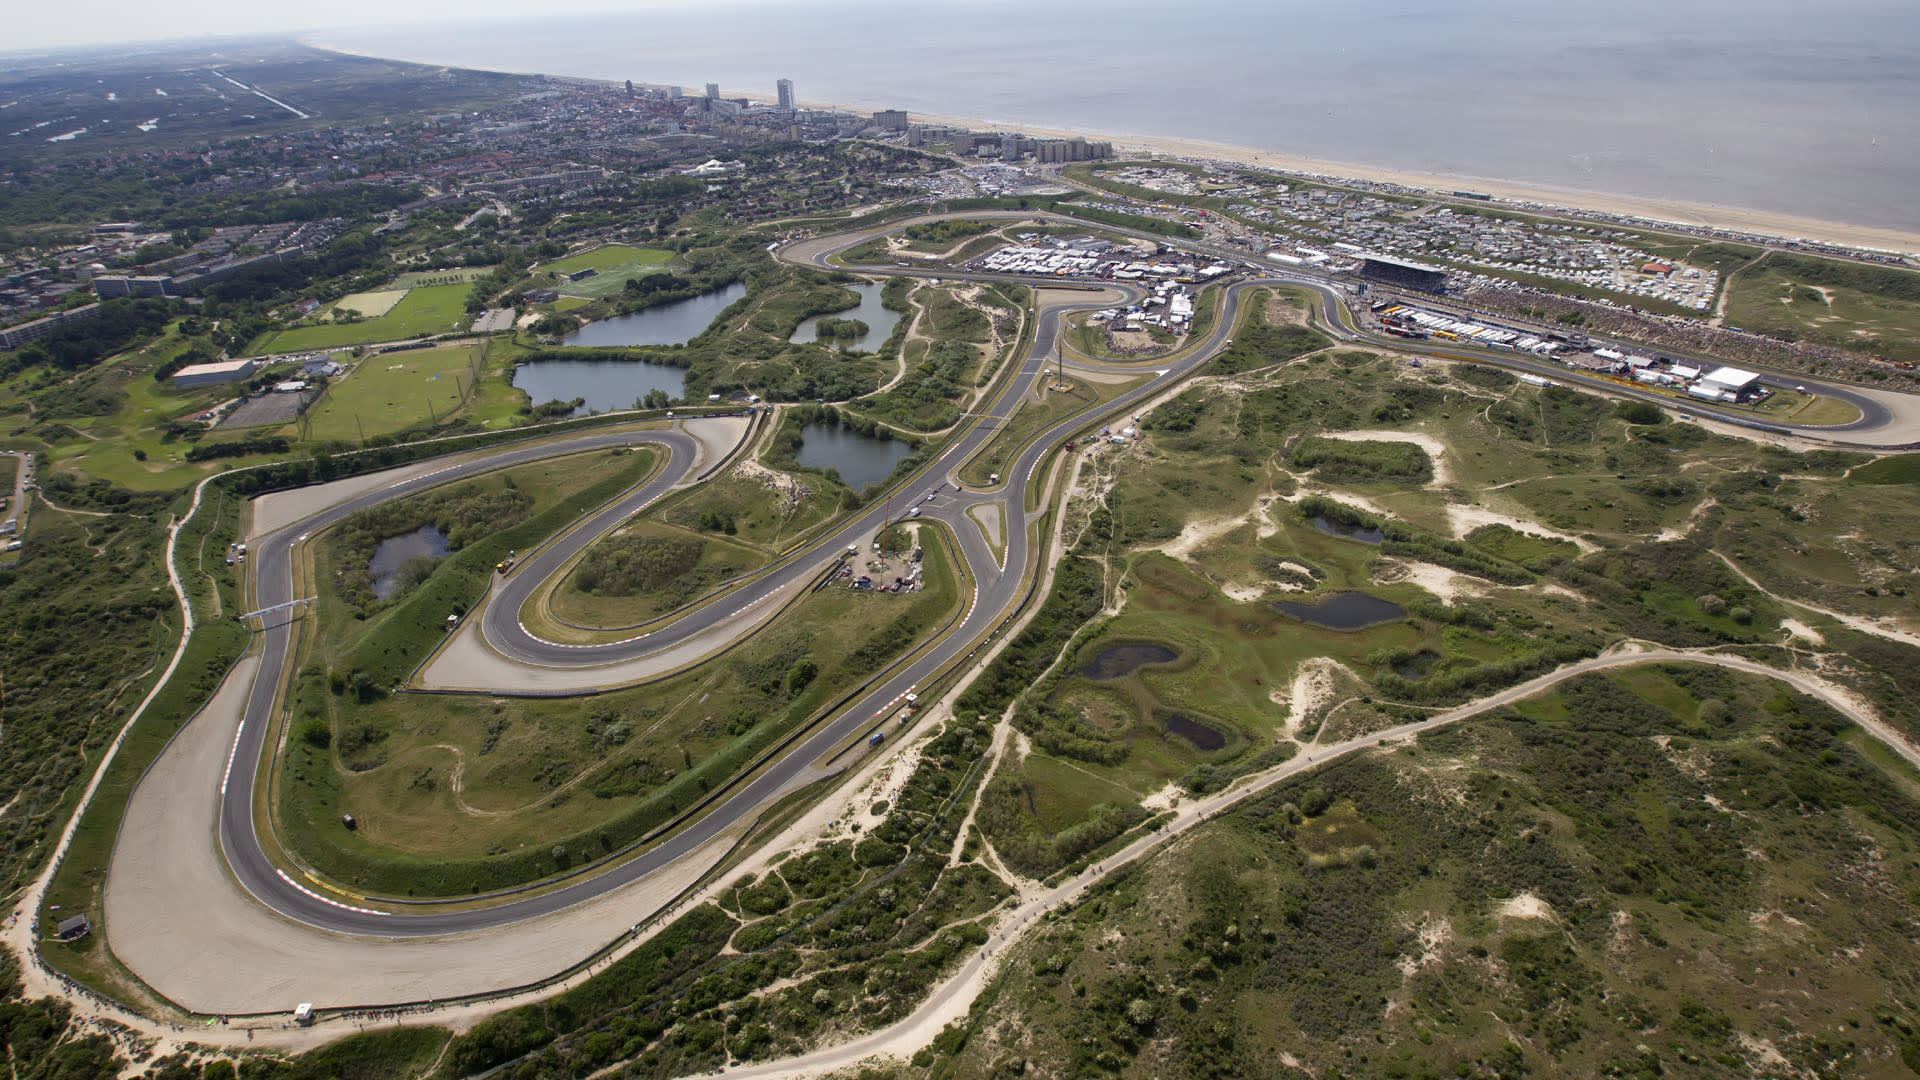 Grand Prix Zandvoort 2021 Organisers Confirm Dutch Grand Prix Will Not Be Held In 2020 Formula 1